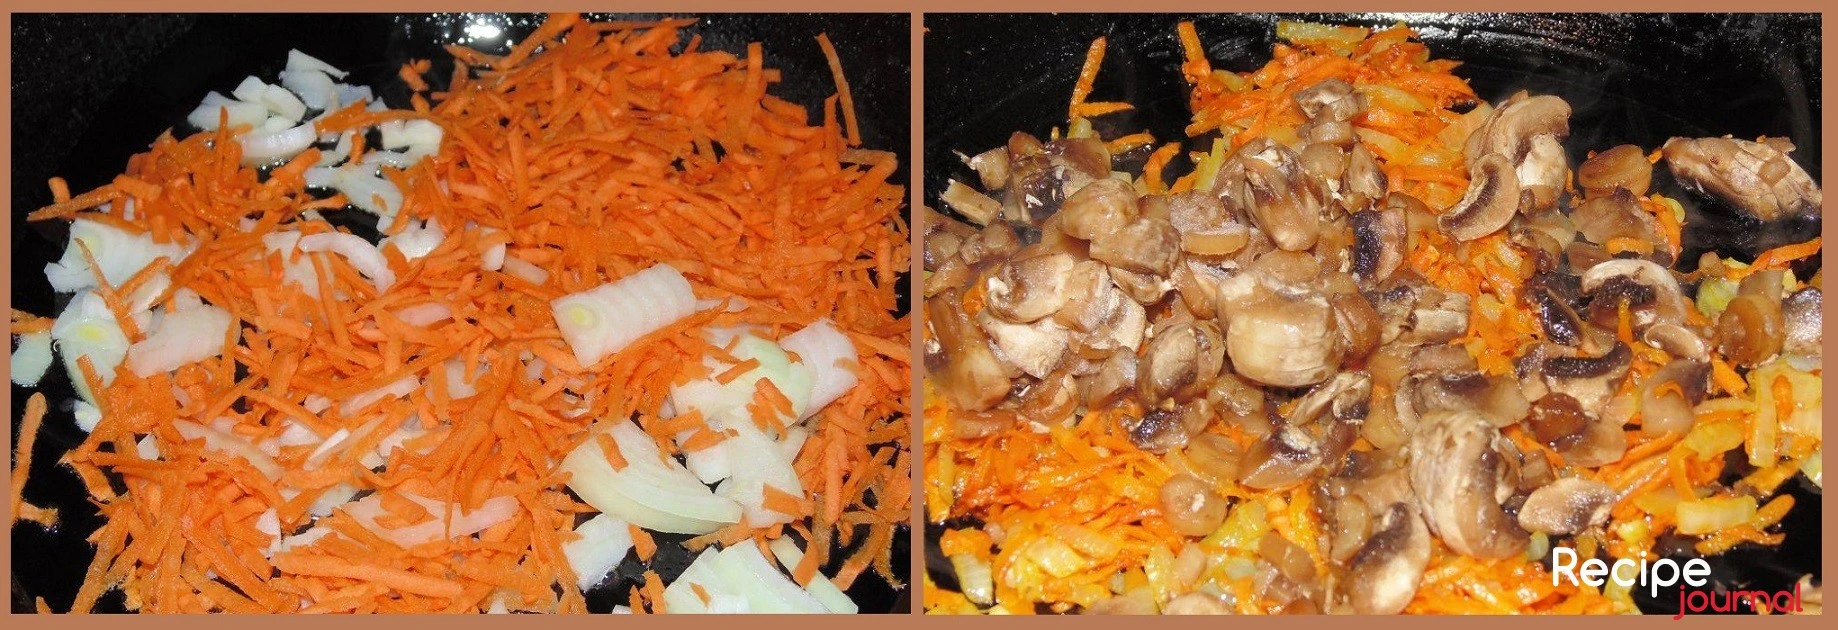 Грибы почистить от кожицы и порезать кубиком. Морковь очистить и натереть на крупной терке. Очищенный лук также мелко порезать. Все обжарить в растительном масле, последовательно добавляя лук, морковь, грибы.